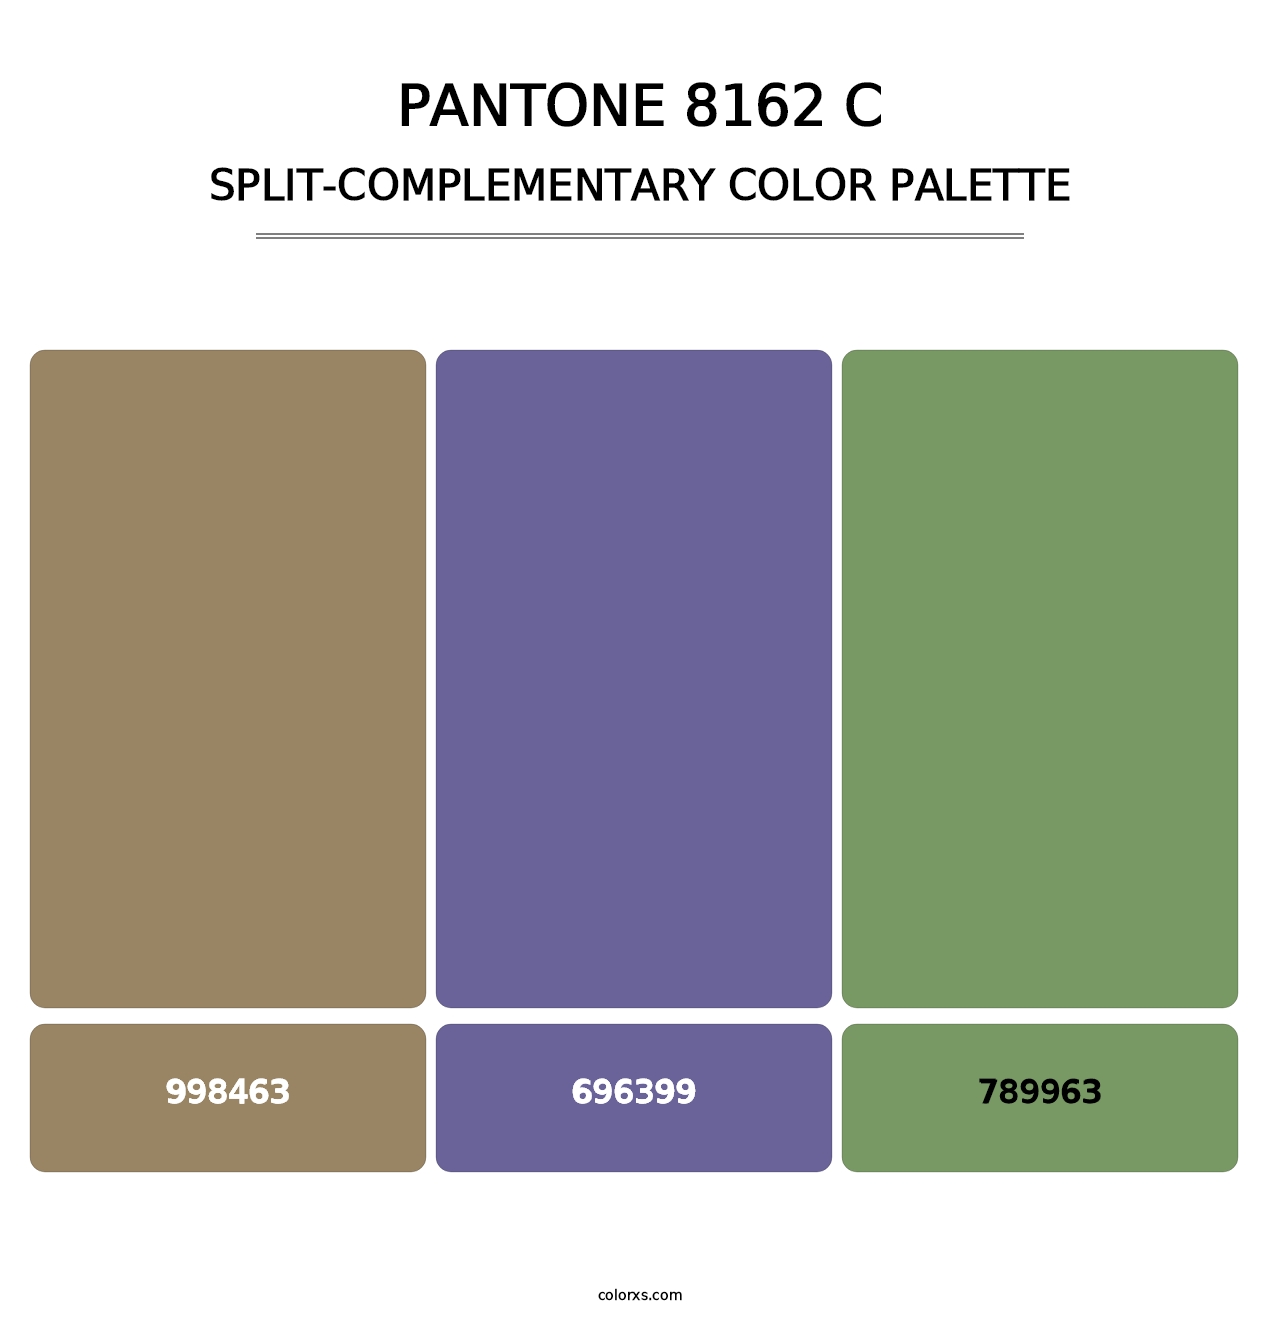 PANTONE 8162 C - Split-Complementary Color Palette